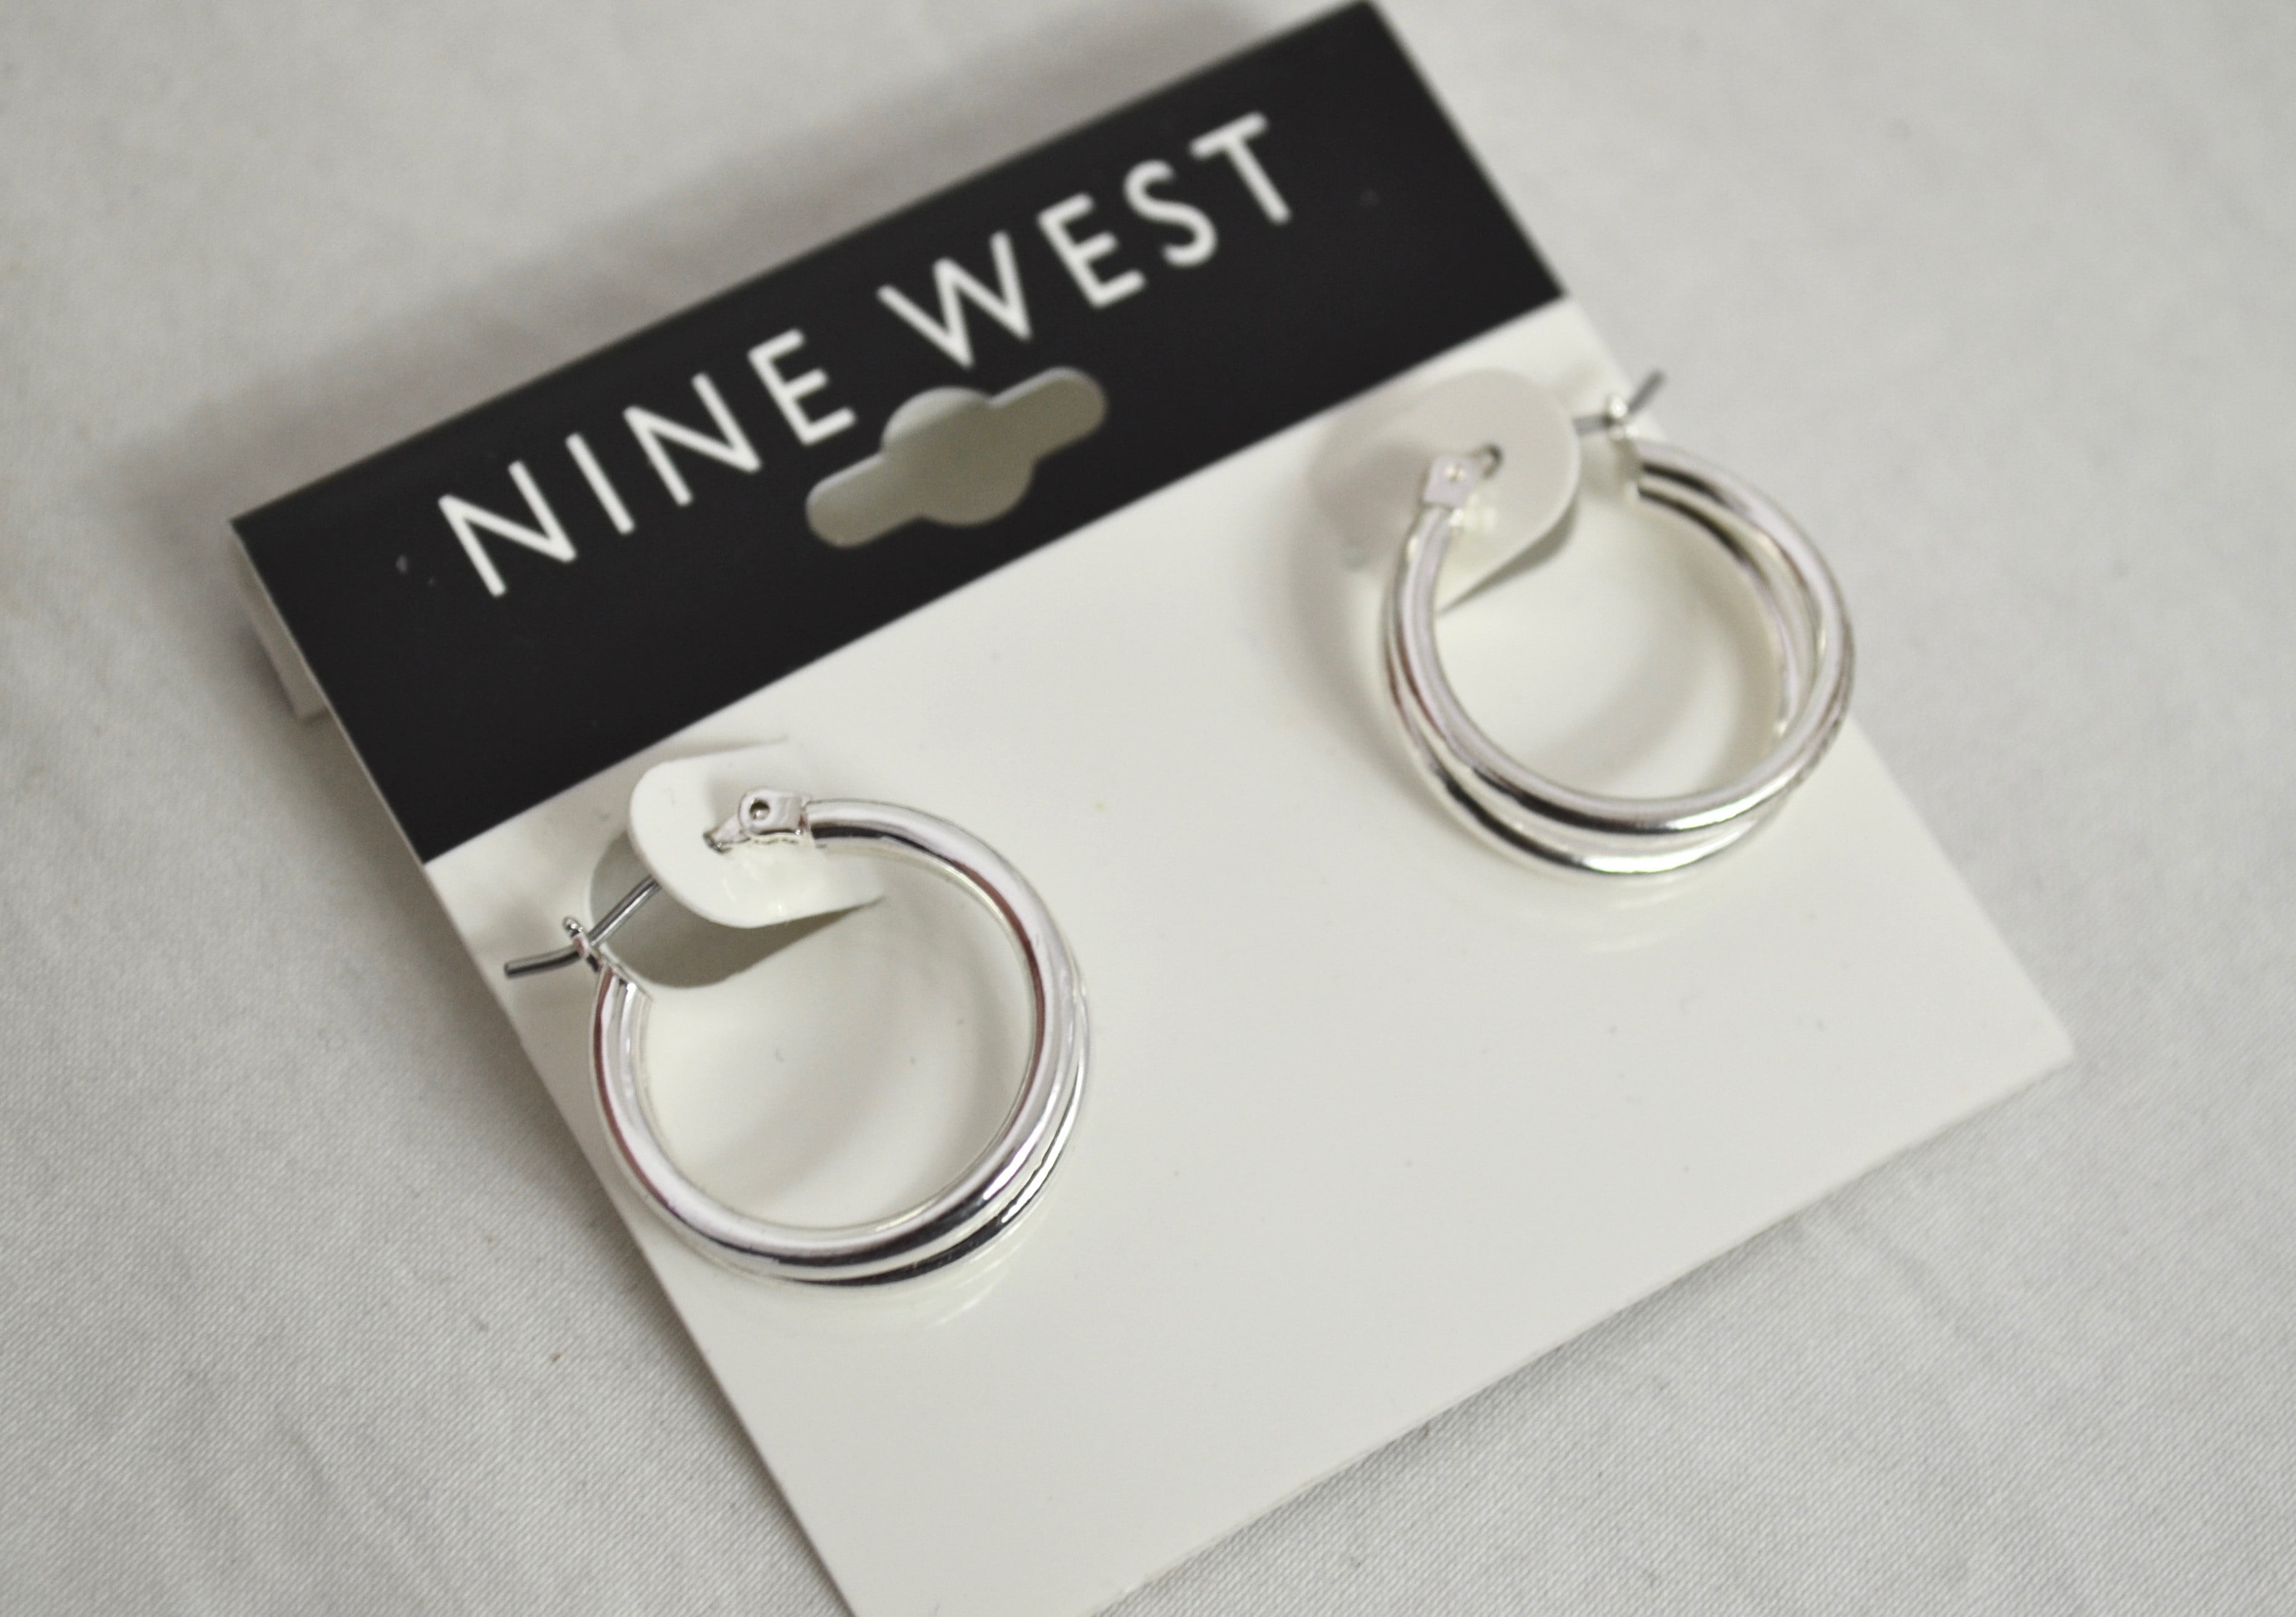 nine west hoop earrings